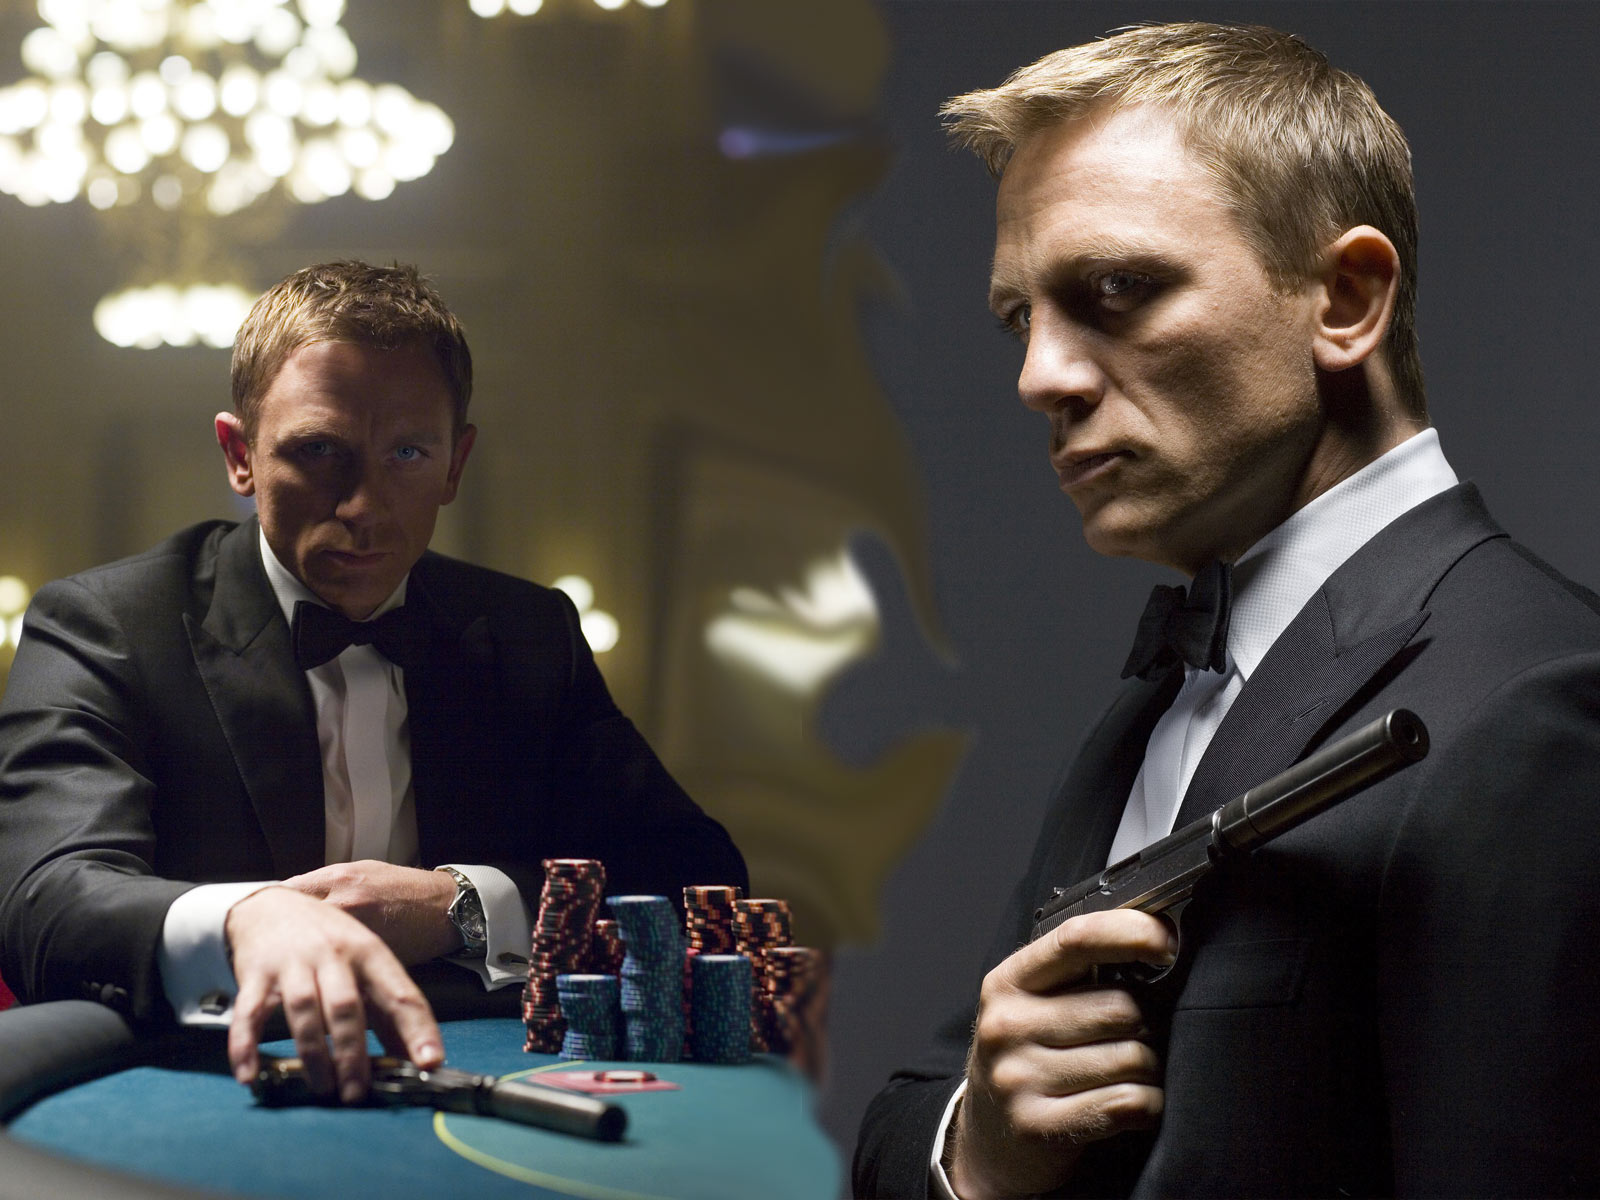 Hình ảnh diễn viên điện ảnh Daniel Craig- James Bond trong bộ vest tuxedo đen trang trọng.